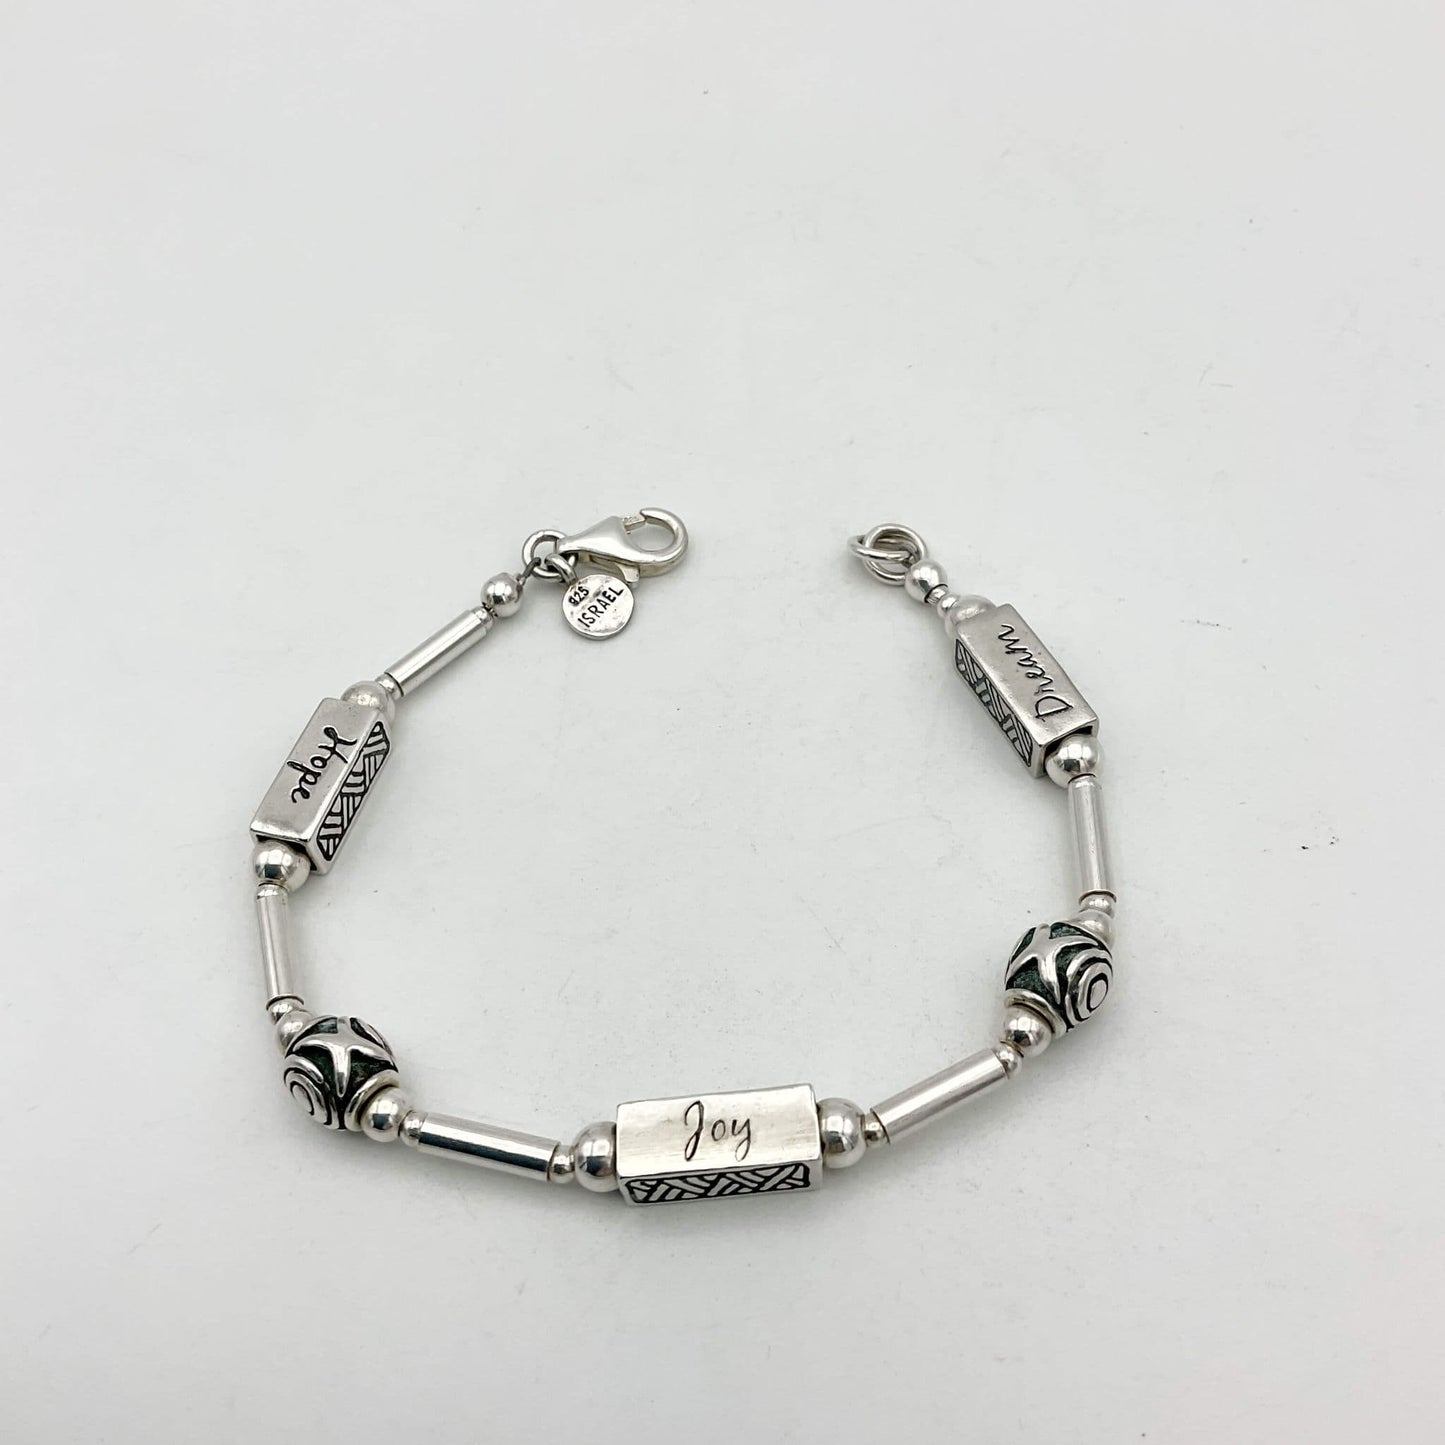 Silpada Joy Hope Dream Silver Bracelet, Israel Silver